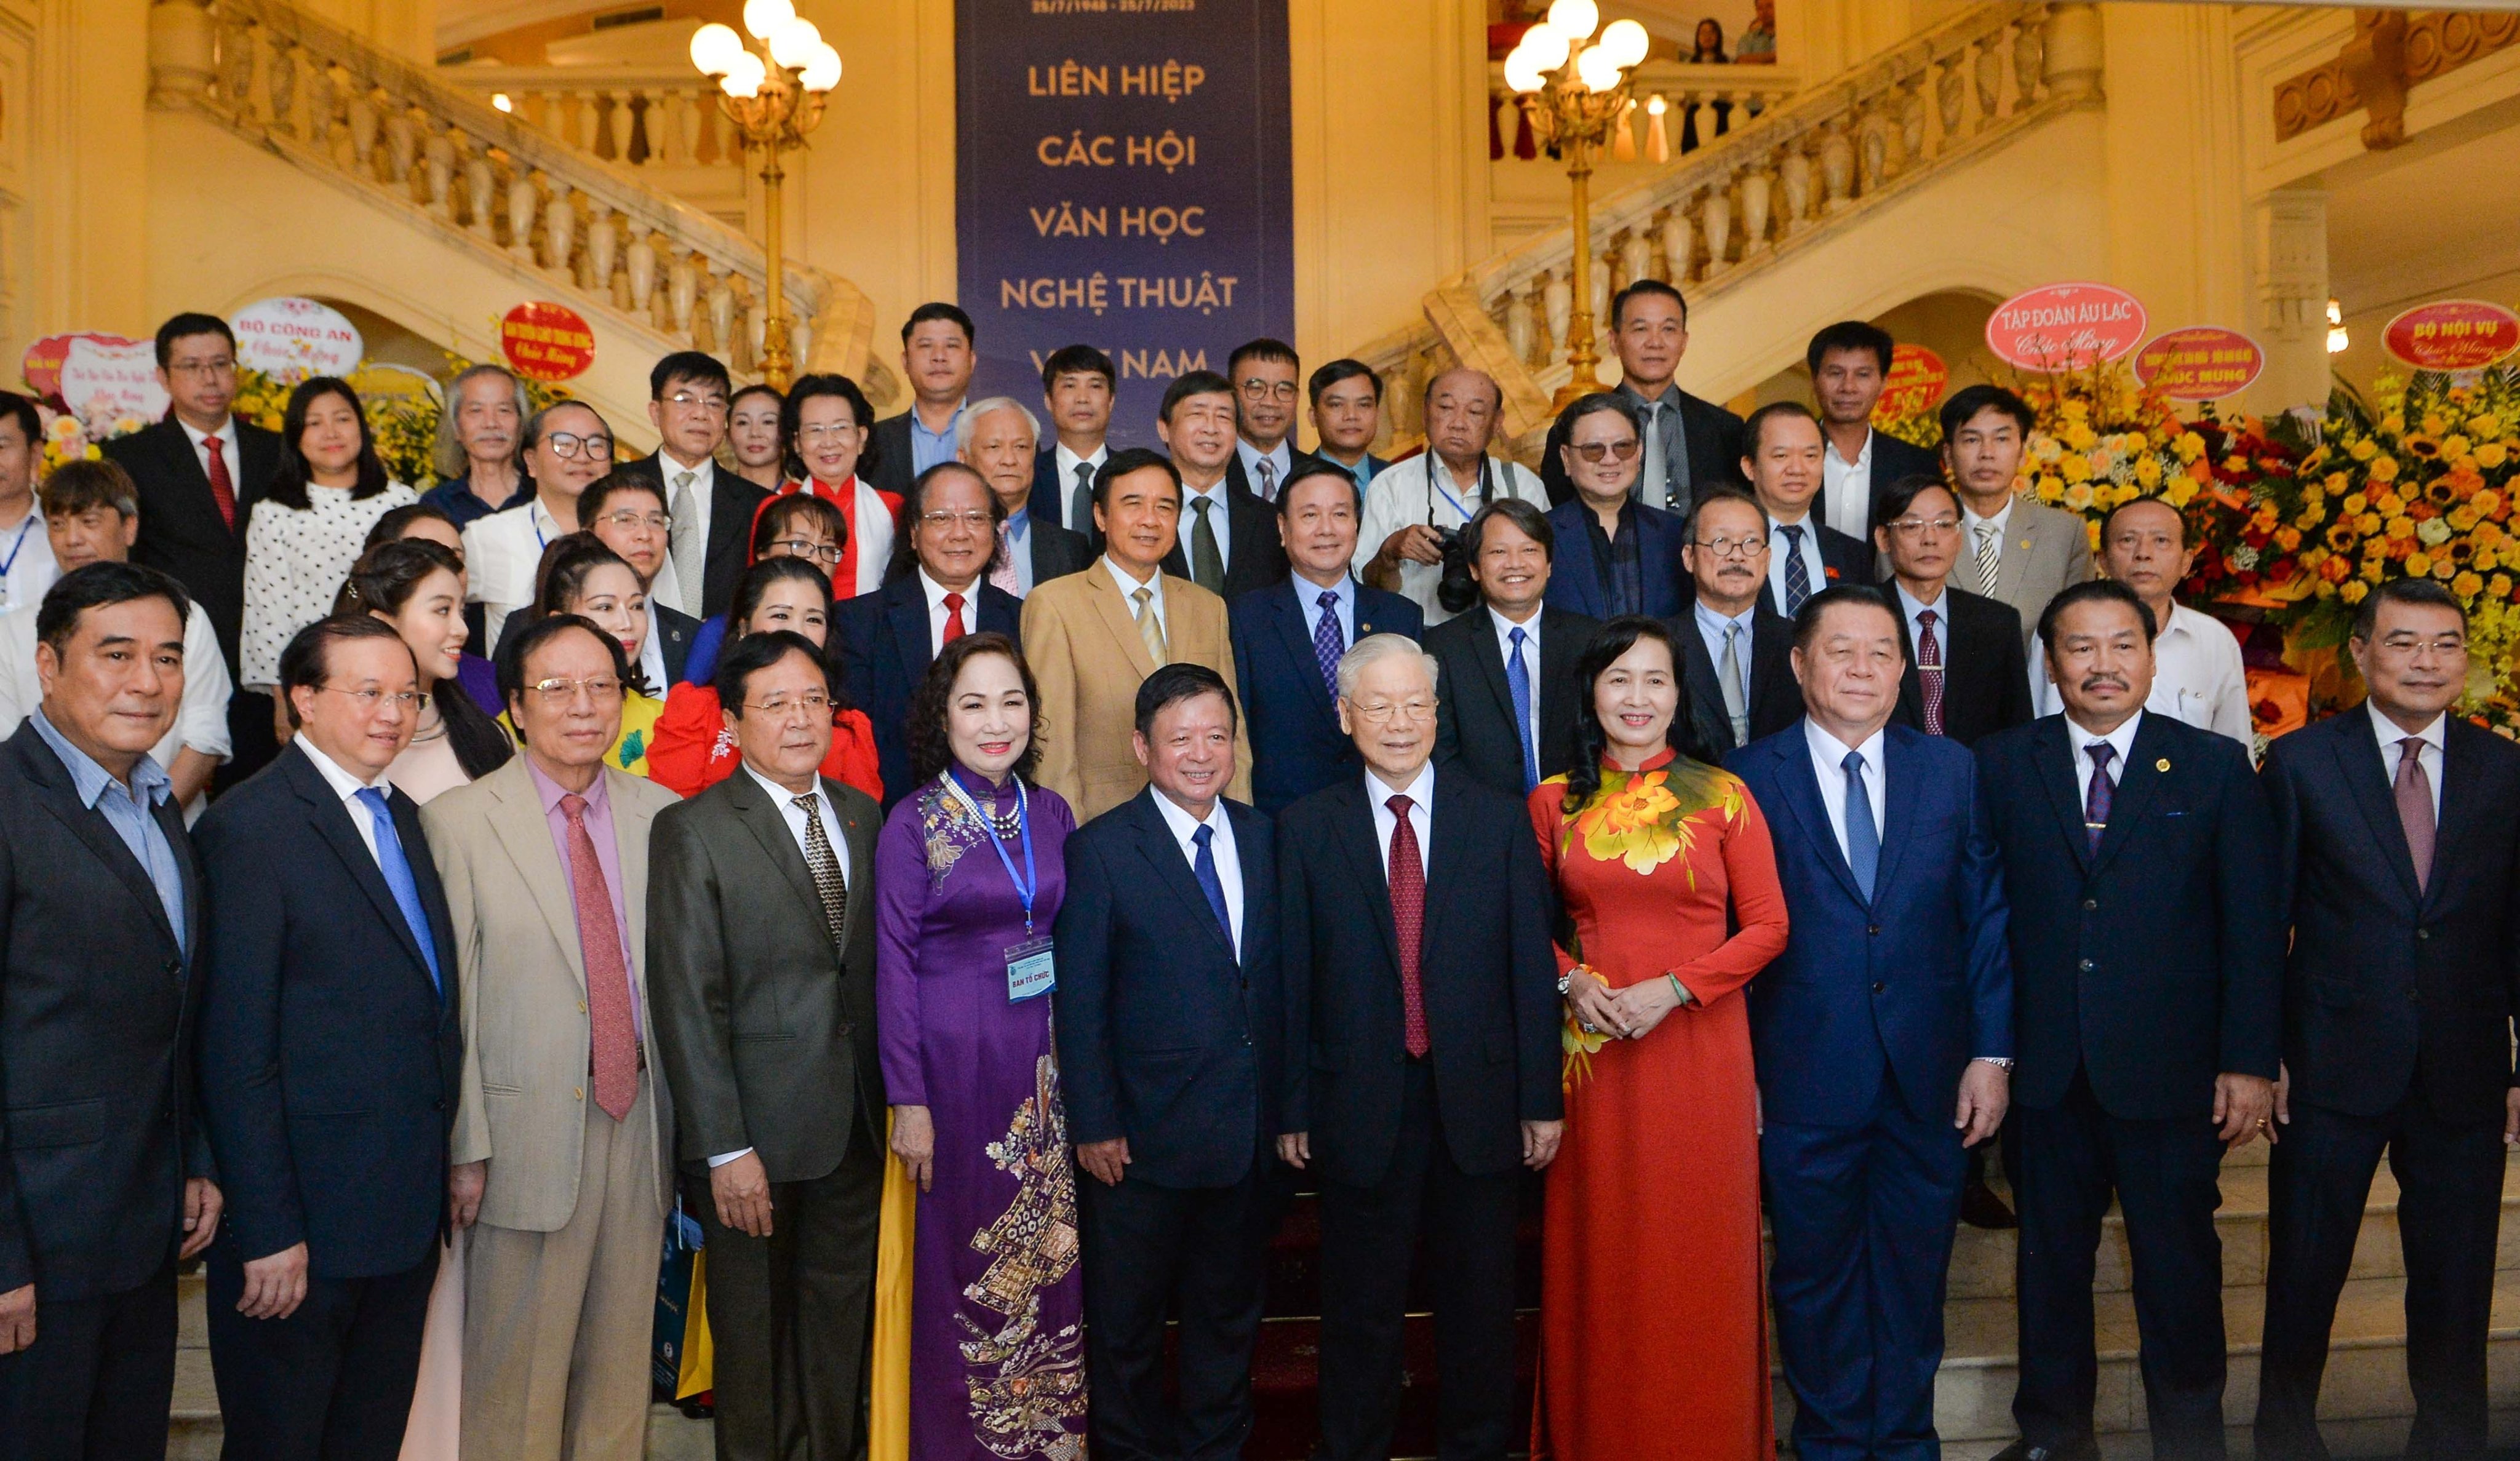 (Ảnh) Lễ kỷ niệm 75 năm thành lập Liên hiệp các Hội Văn học nghệ thuật Việt Nam - 3